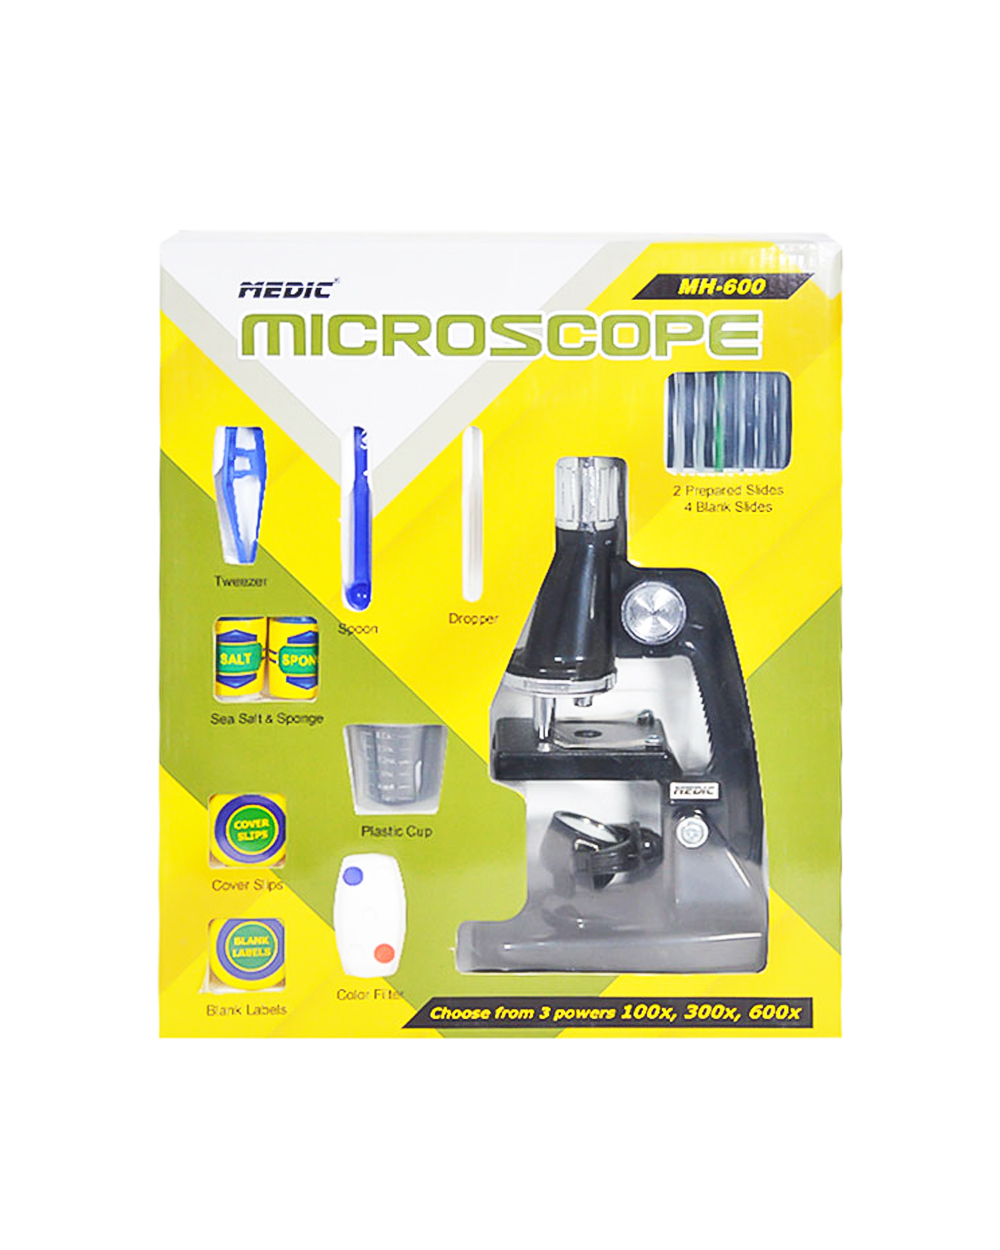 میکروسکوپ مدیک مدل MH-600 | فروشگاه اینترنتی موبیدو | فروشگاه اینترنتیموبیدو